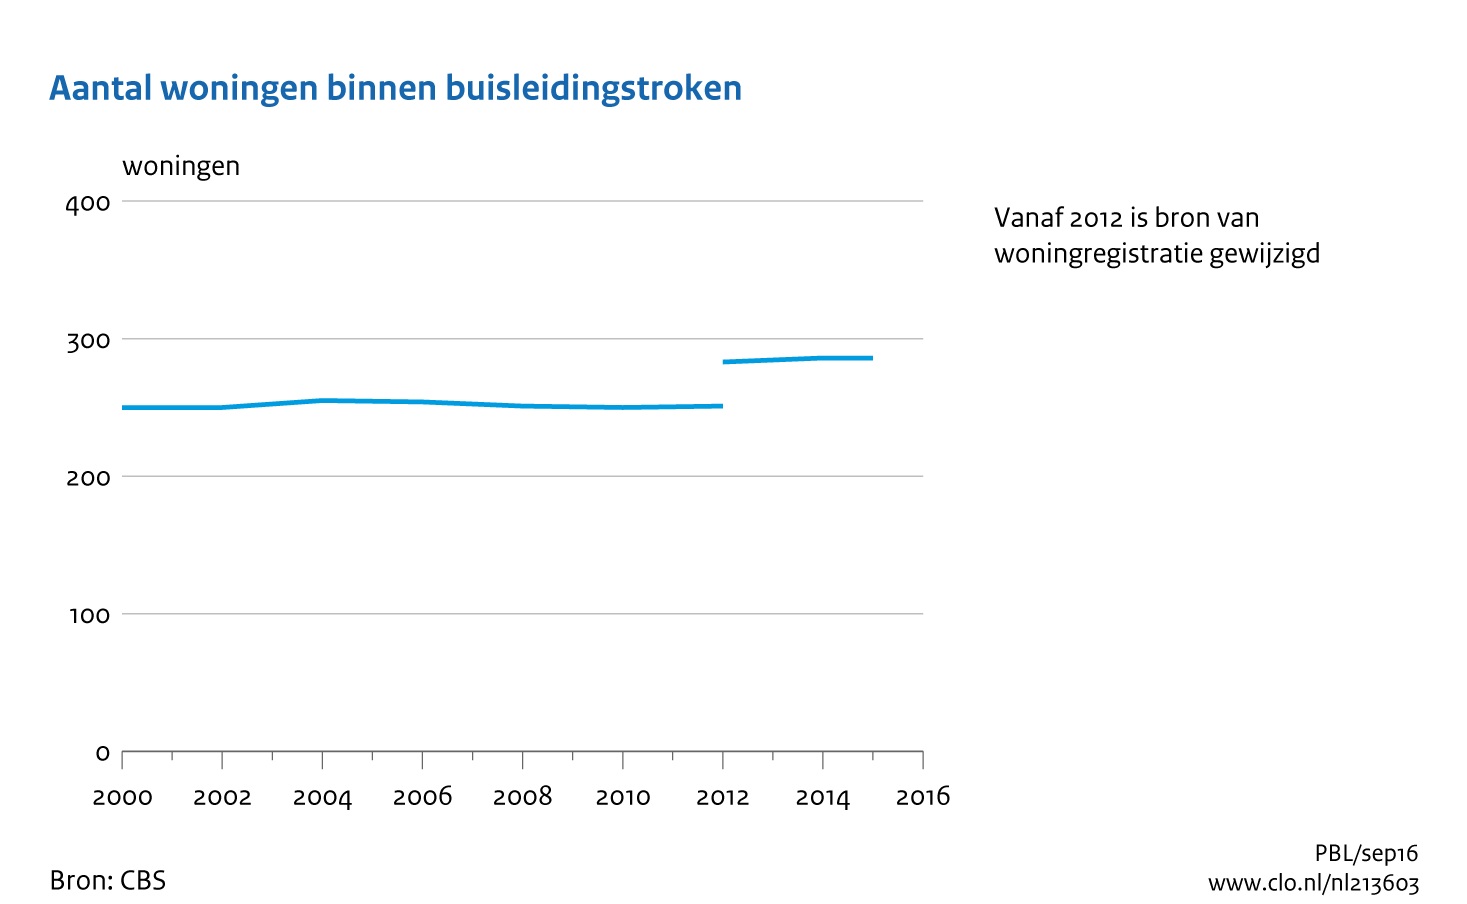 Figuur Woningen binnen buisleidingenstroken, 2000-2015. In de rest van de tekst wordt deze figuur uitgebreider uitgelegd.